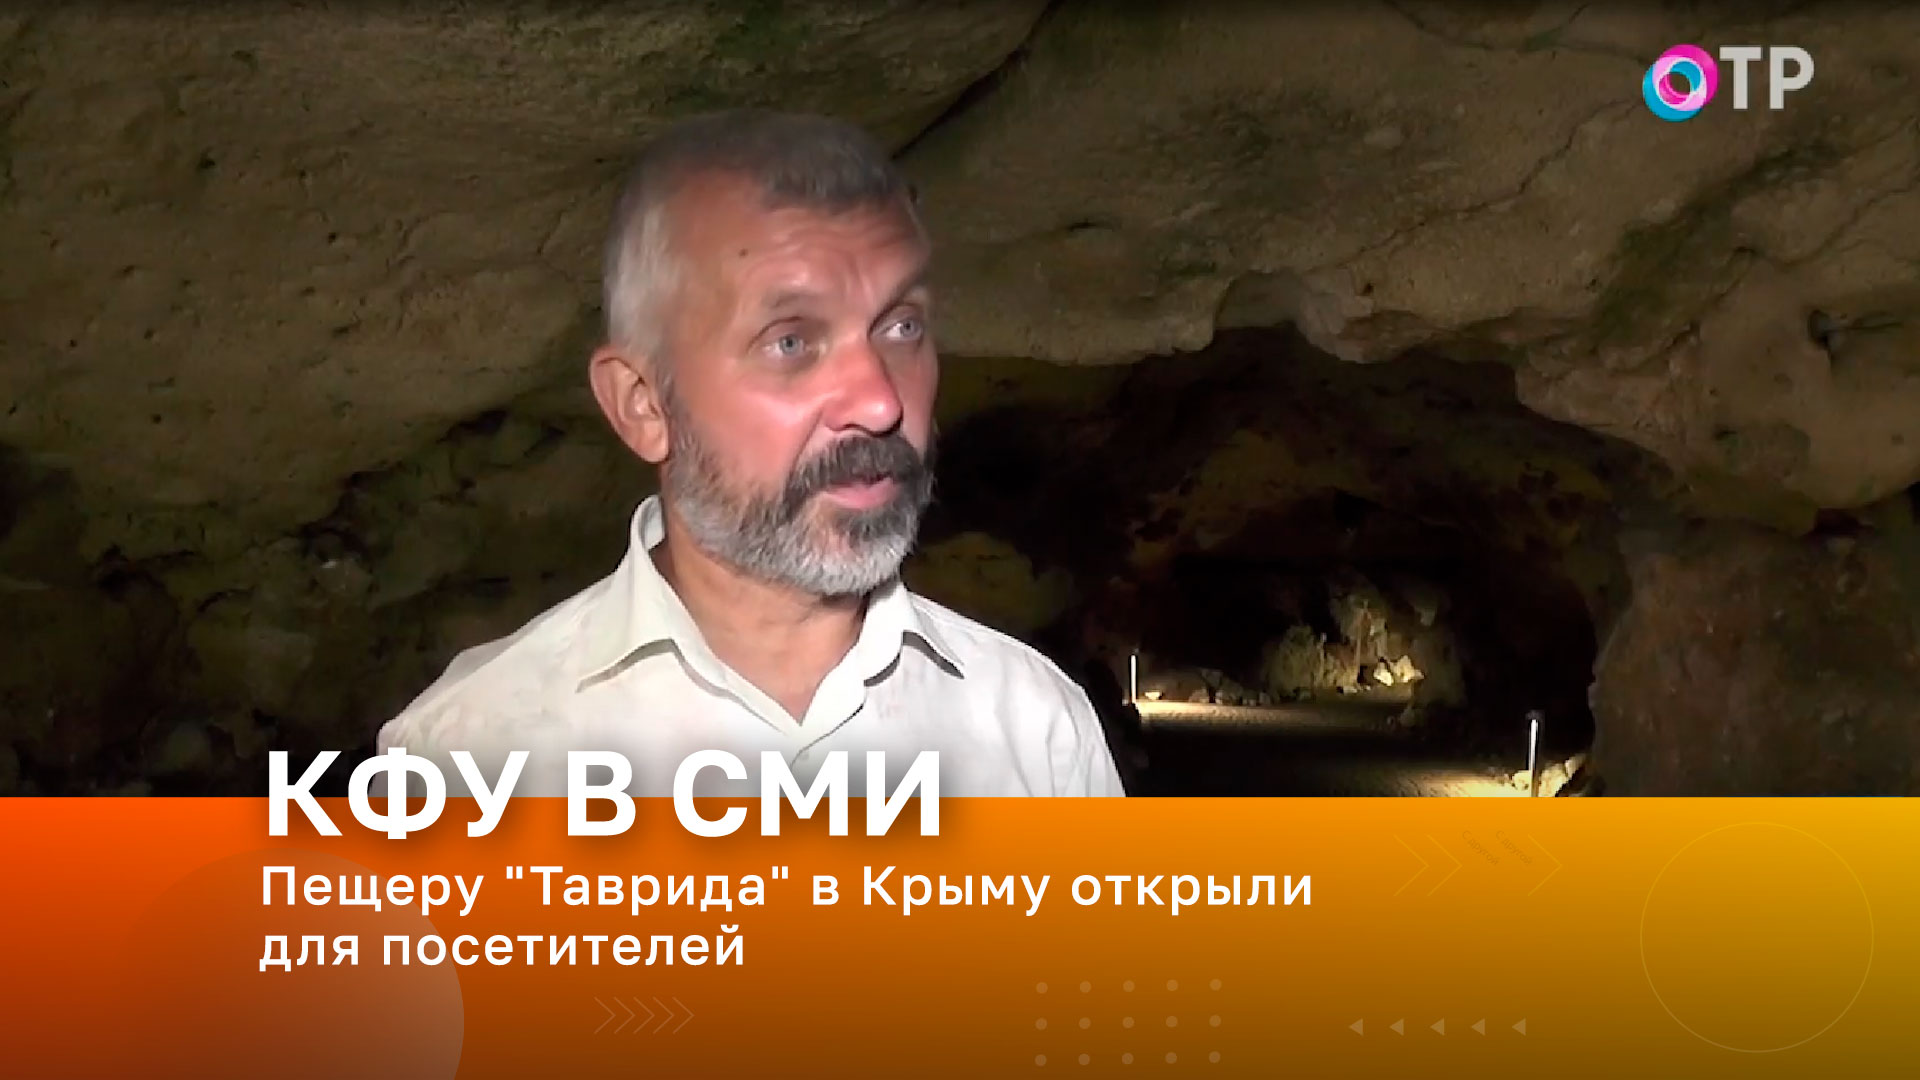 В Крыму для посещения открыли пещеру «Таврида»